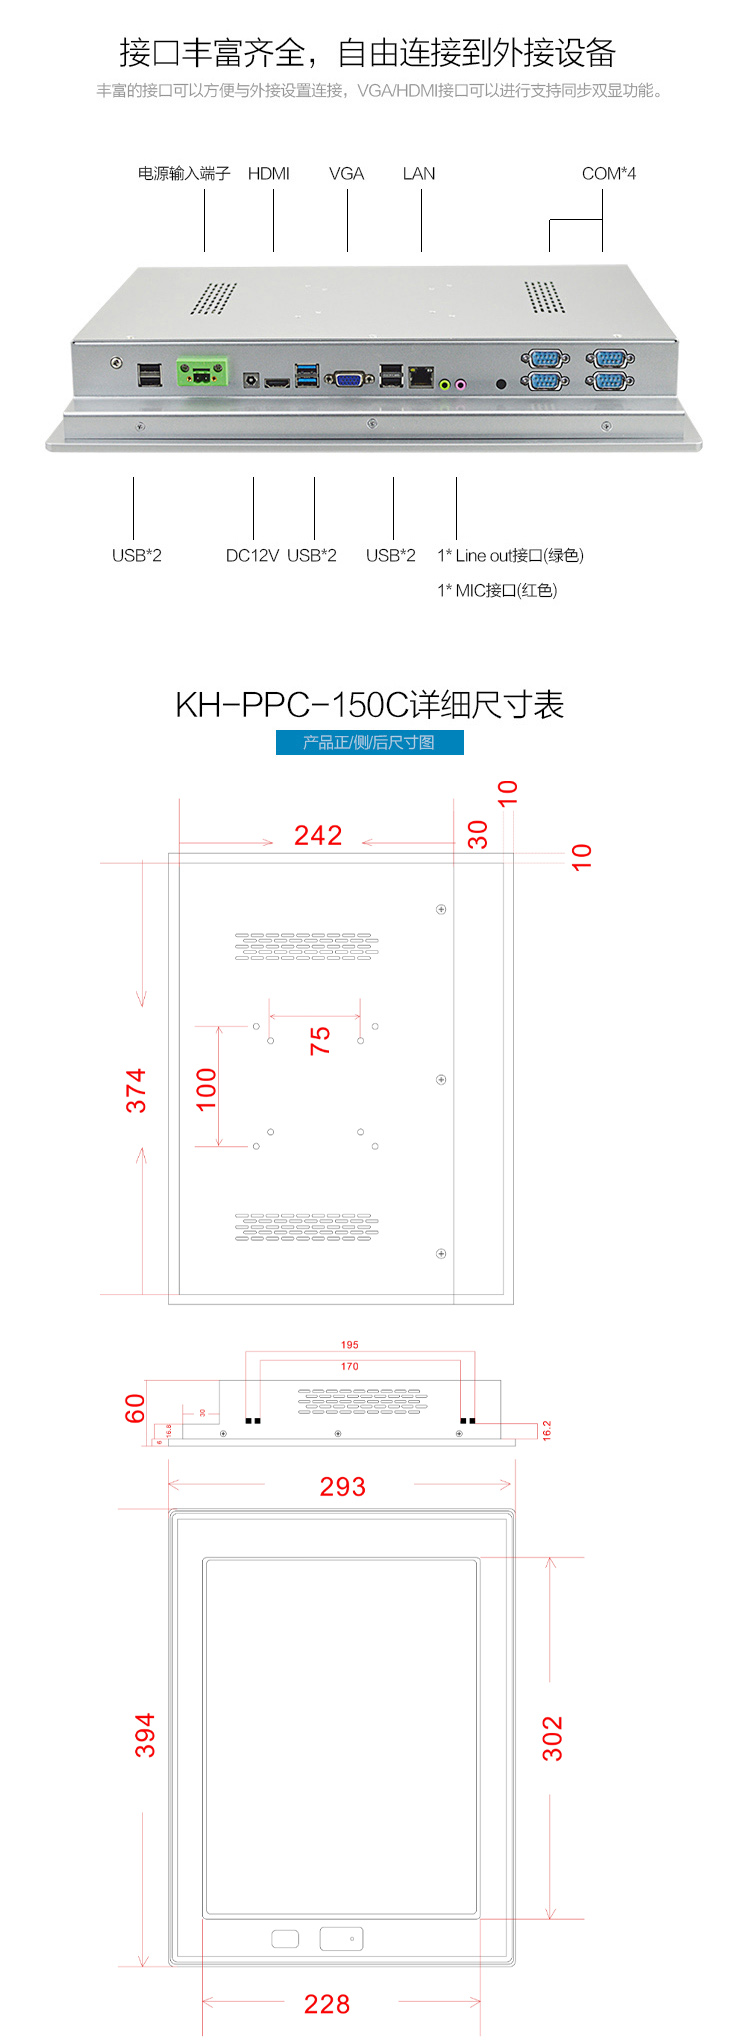 KHPPC-1501